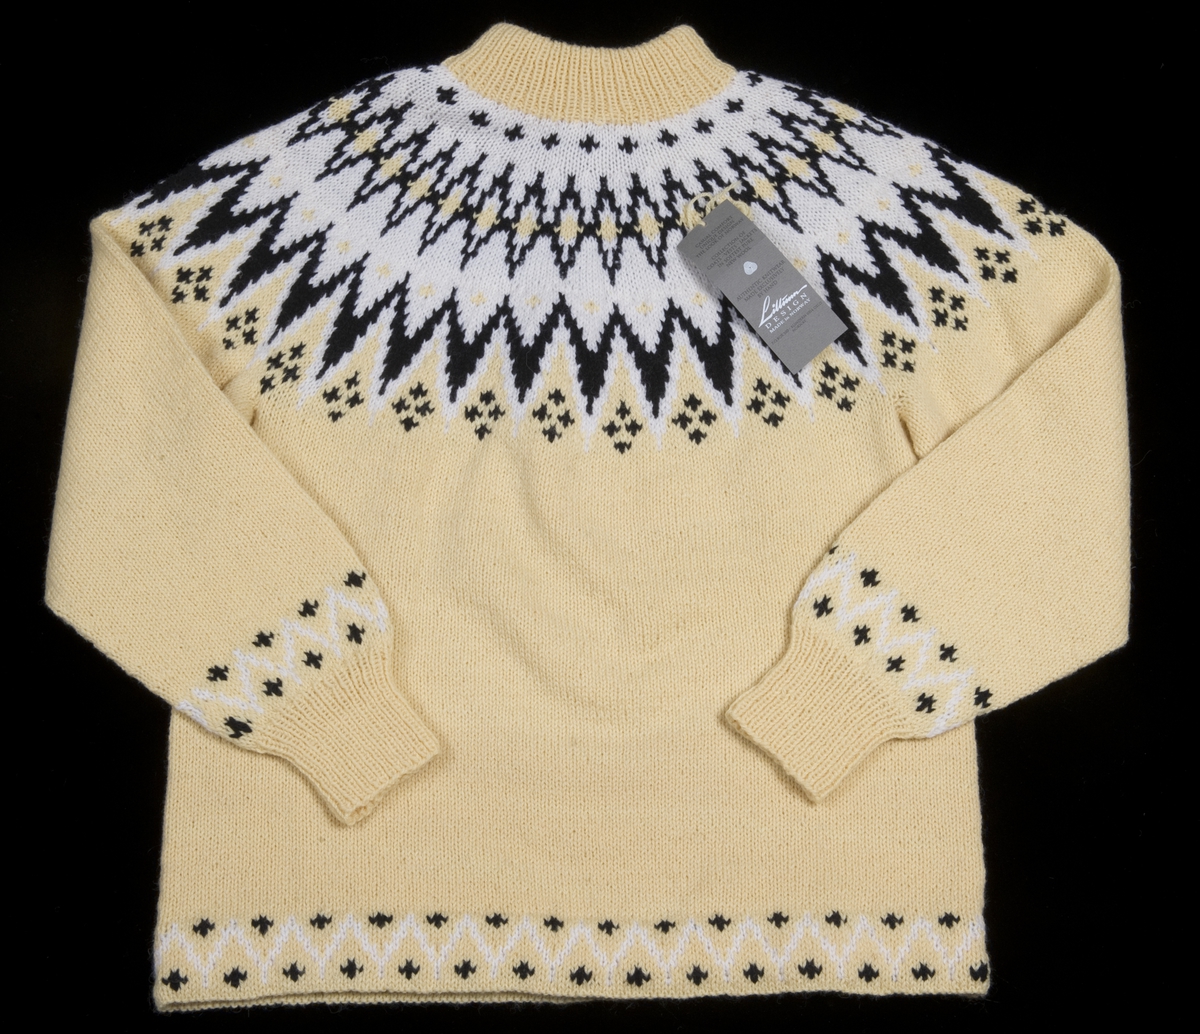 Gul strikket genser med mønster i hvit og svart.